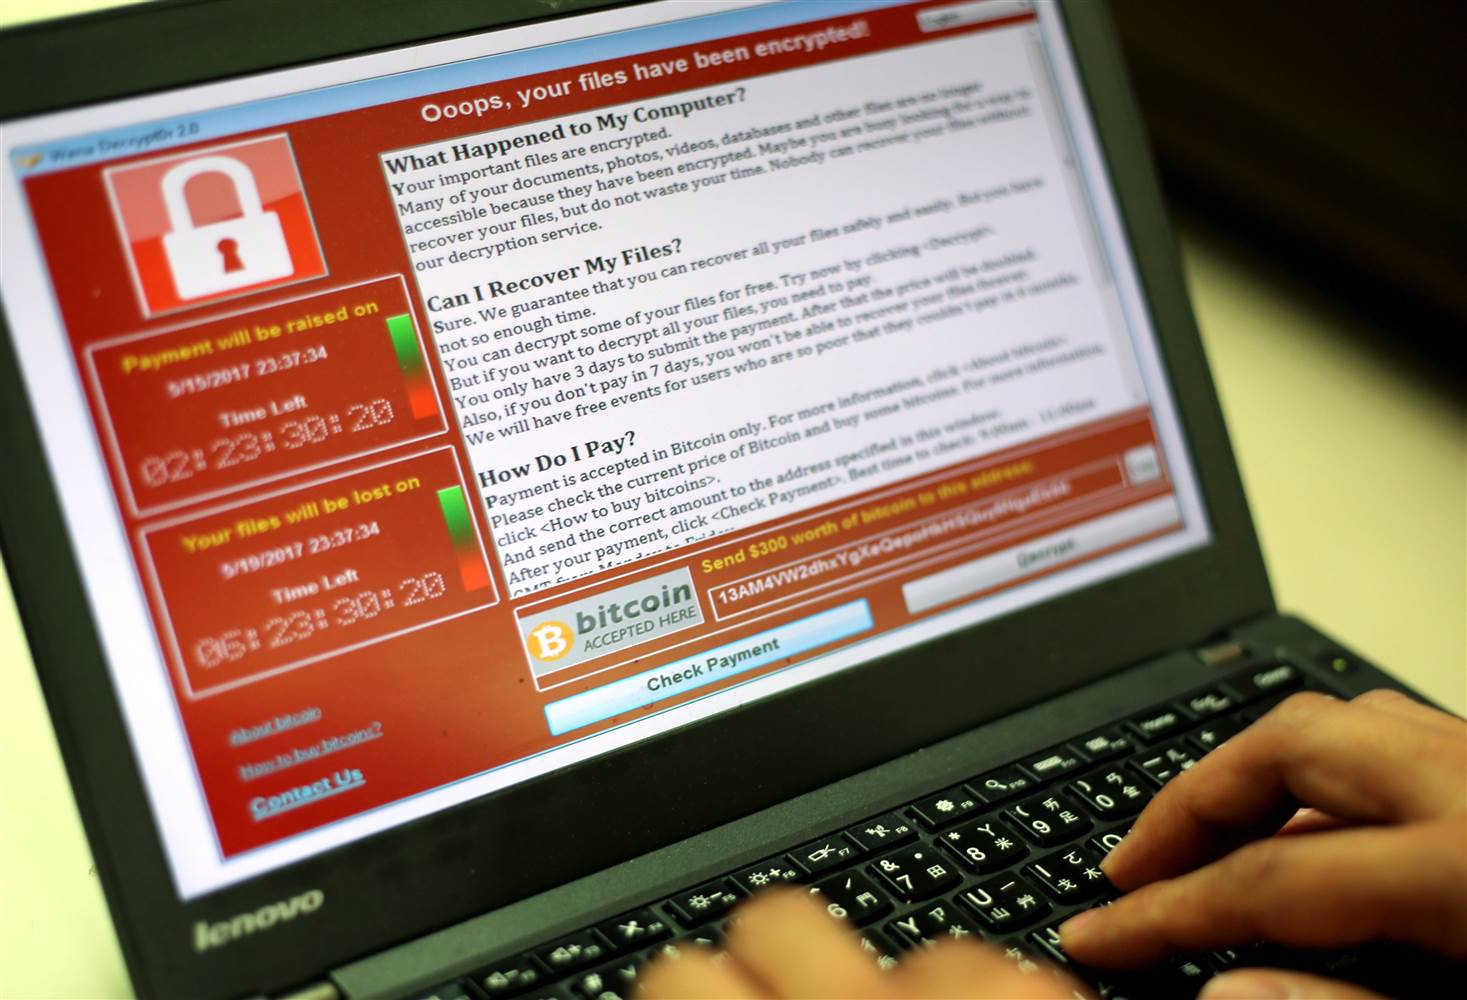 Attacco hacker WannaCry: come difendersi dal virus che prende in ostaggio i pc